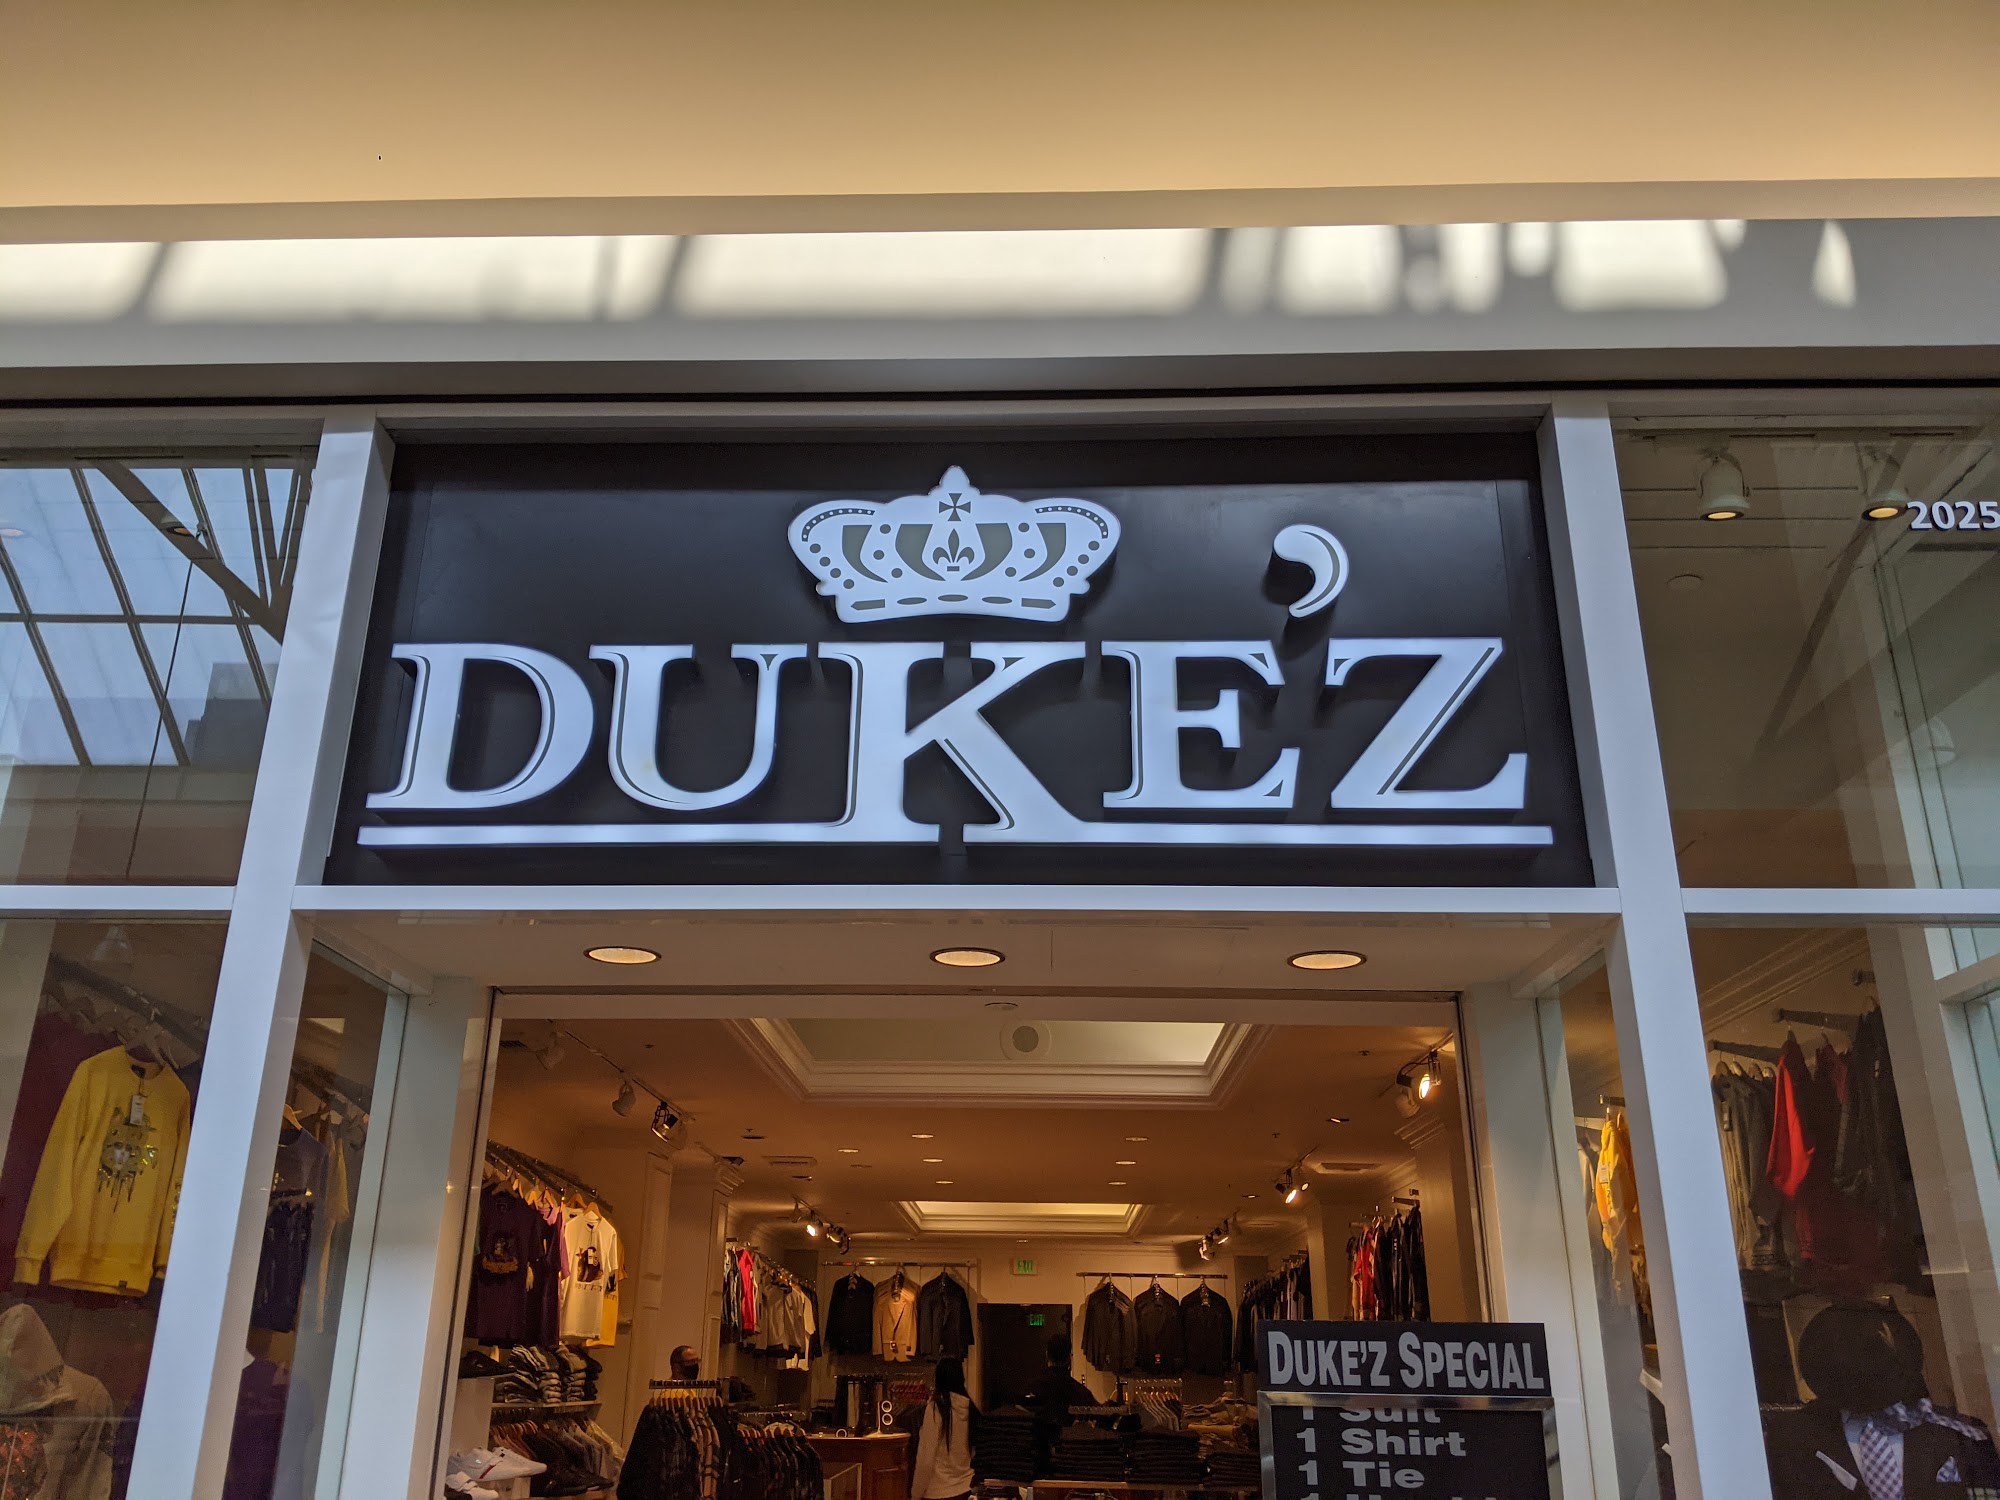 Duke'Z